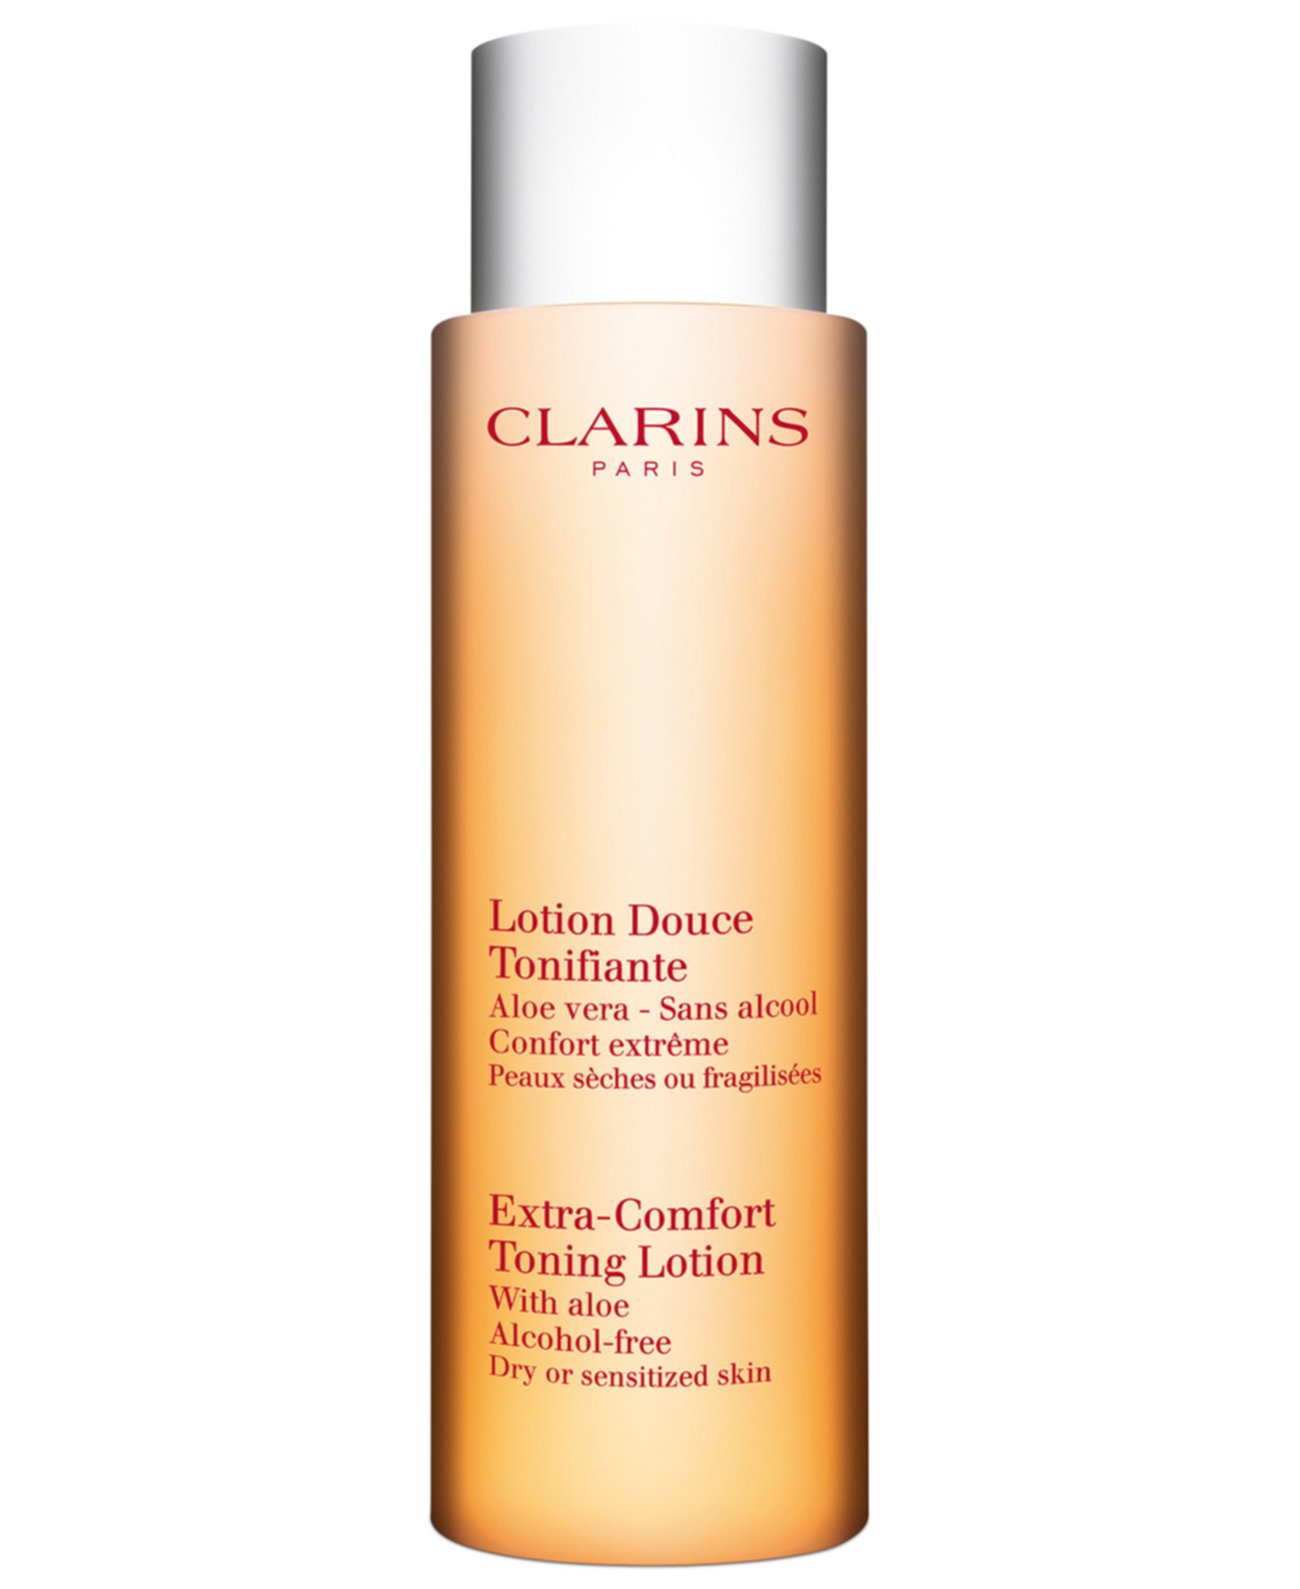 Extra-Comfort Тонизирующий лосьон для сухой или чувствительной кожи, 6,8 унции Clarins